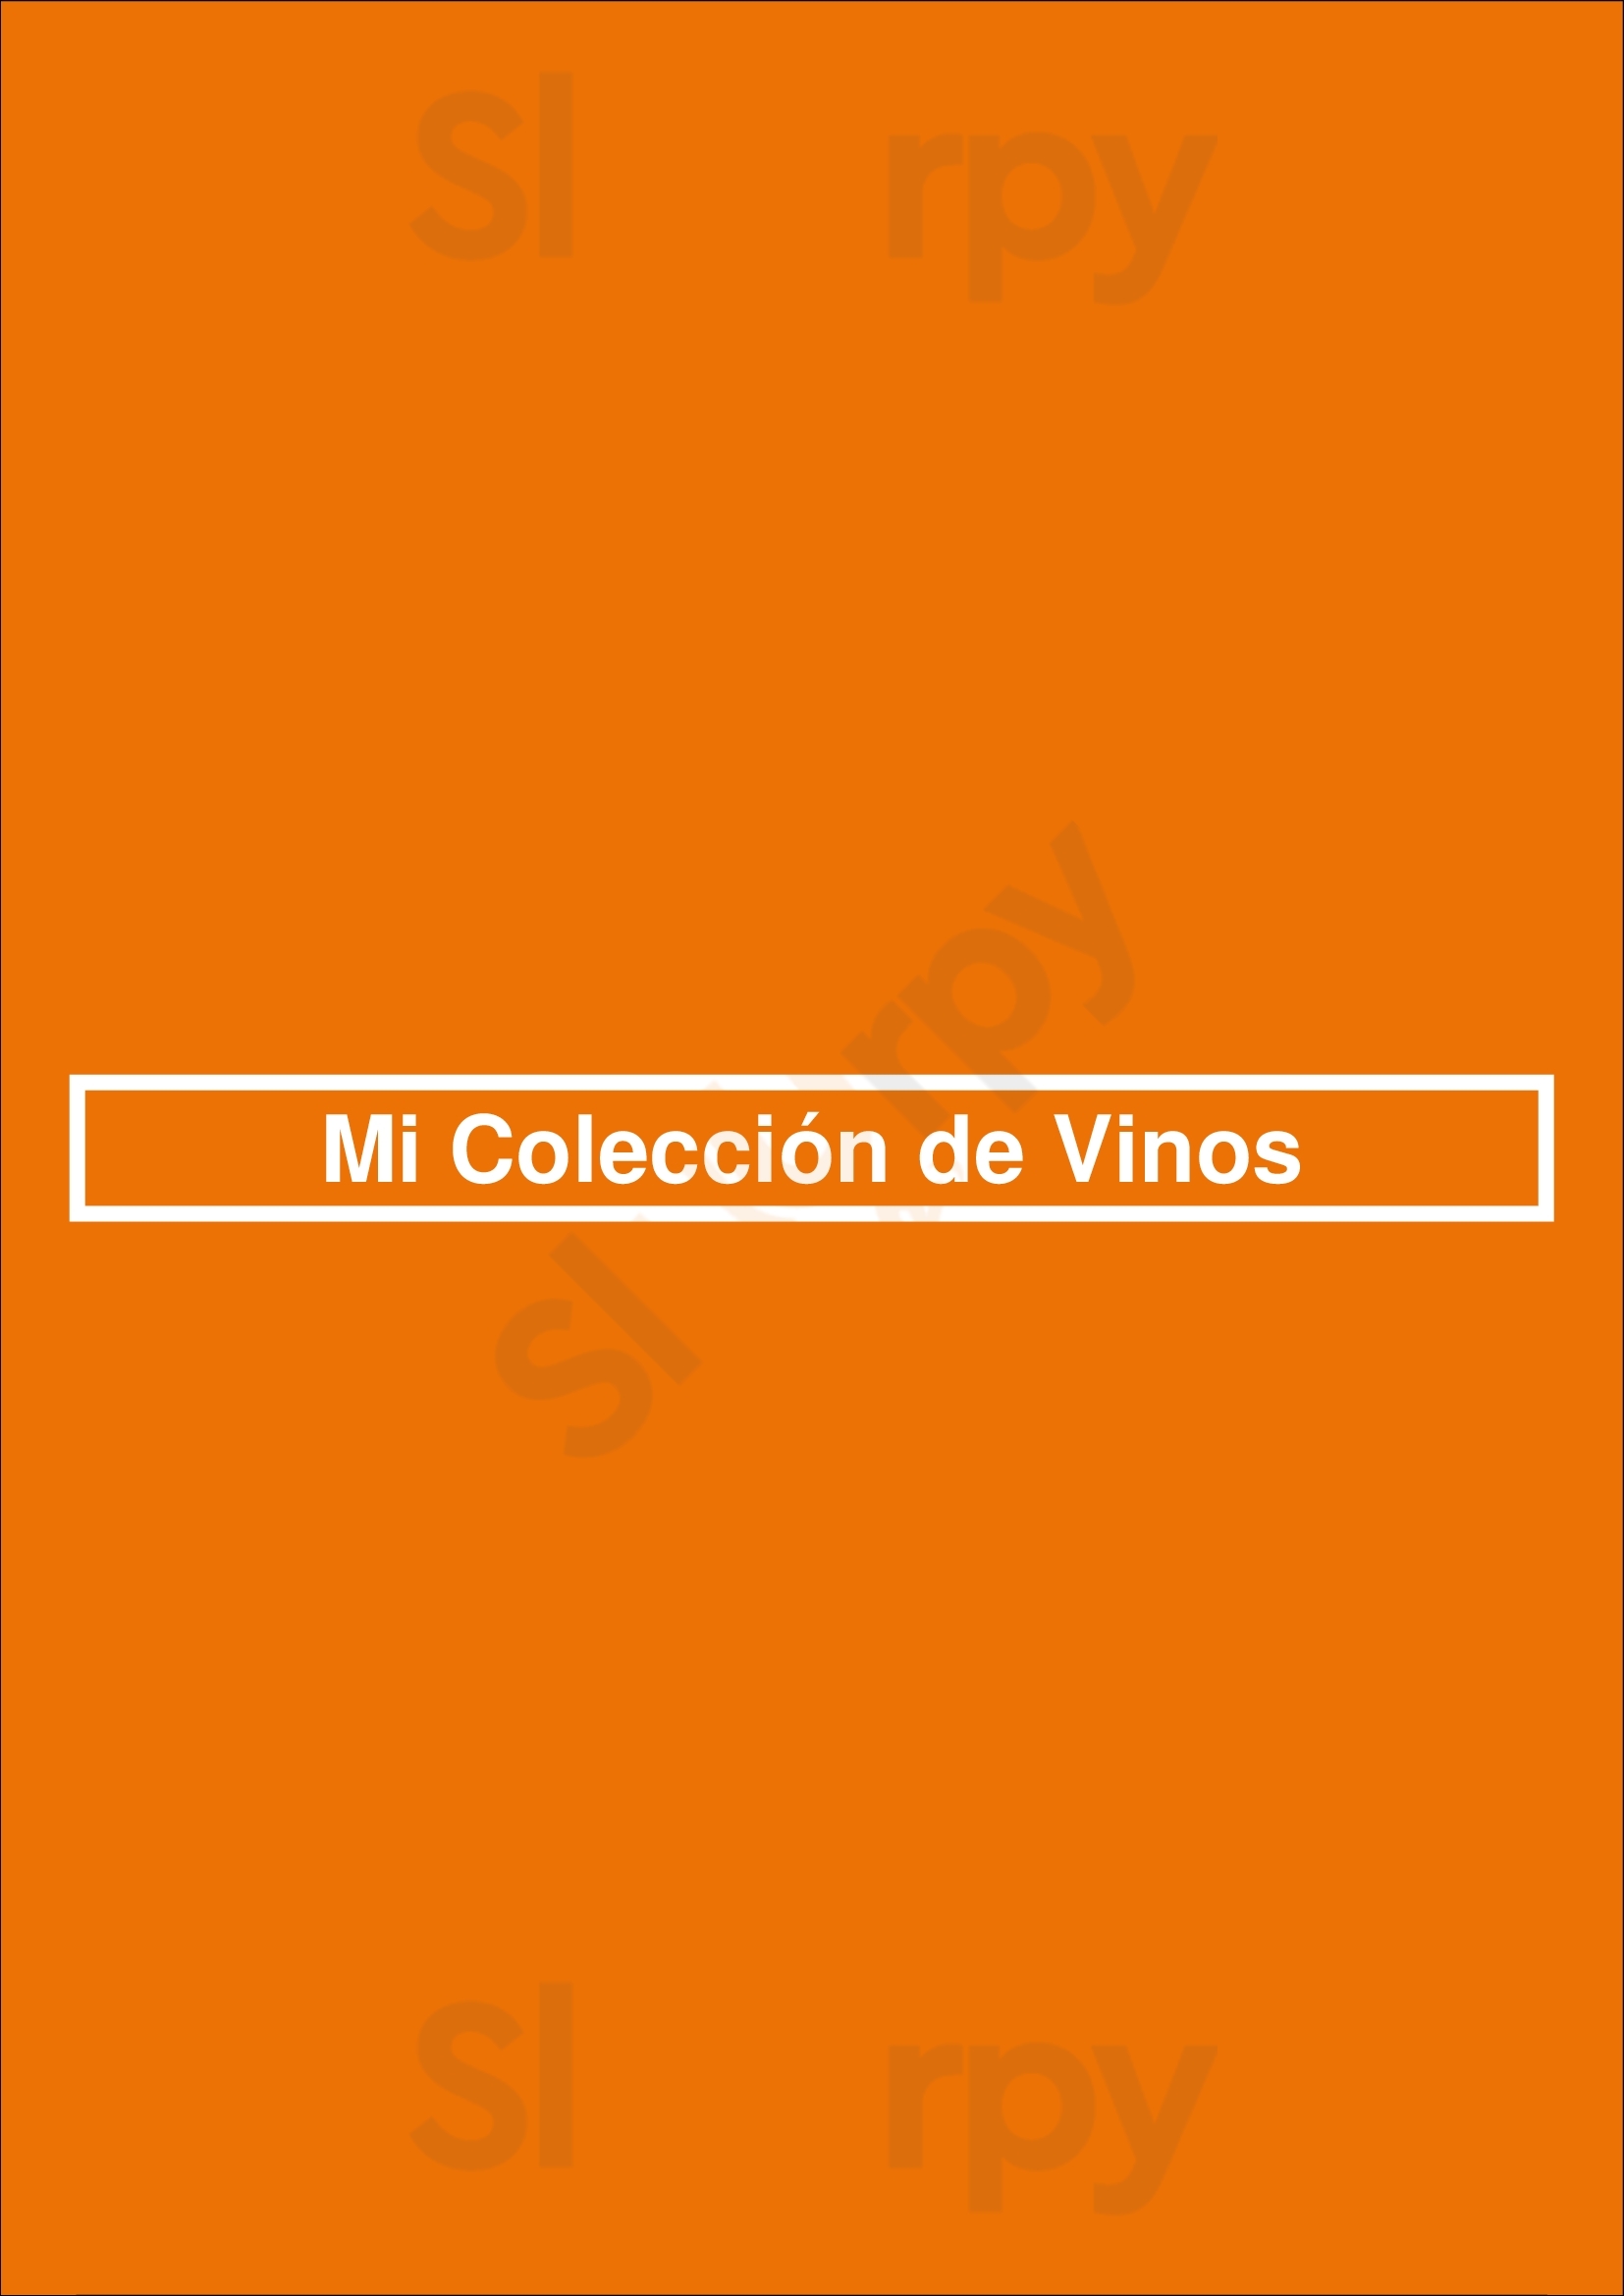 Mi Coleccion De Vinos Buenos Aires Menu - 1